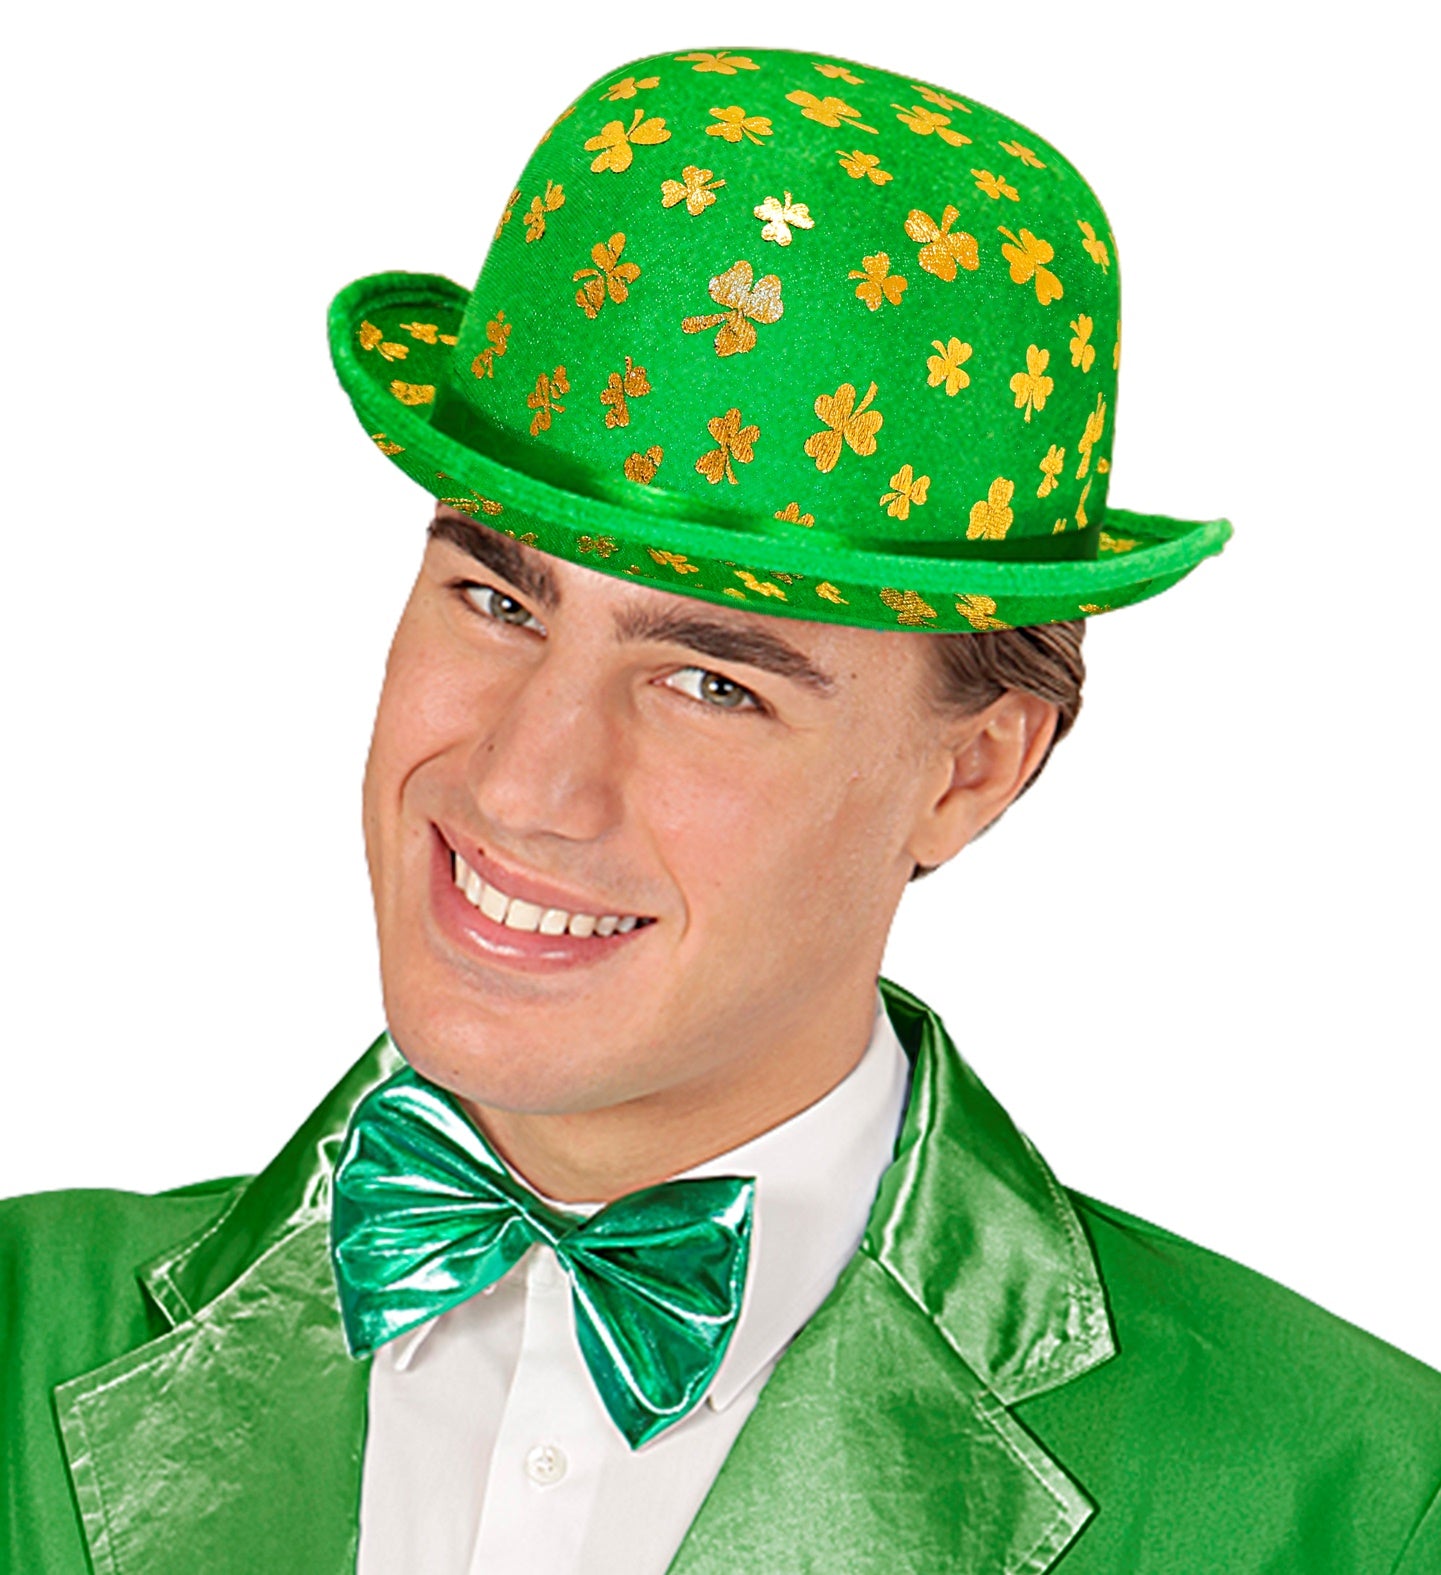 St Patrick's Day Shamrock Bowler Hat for men